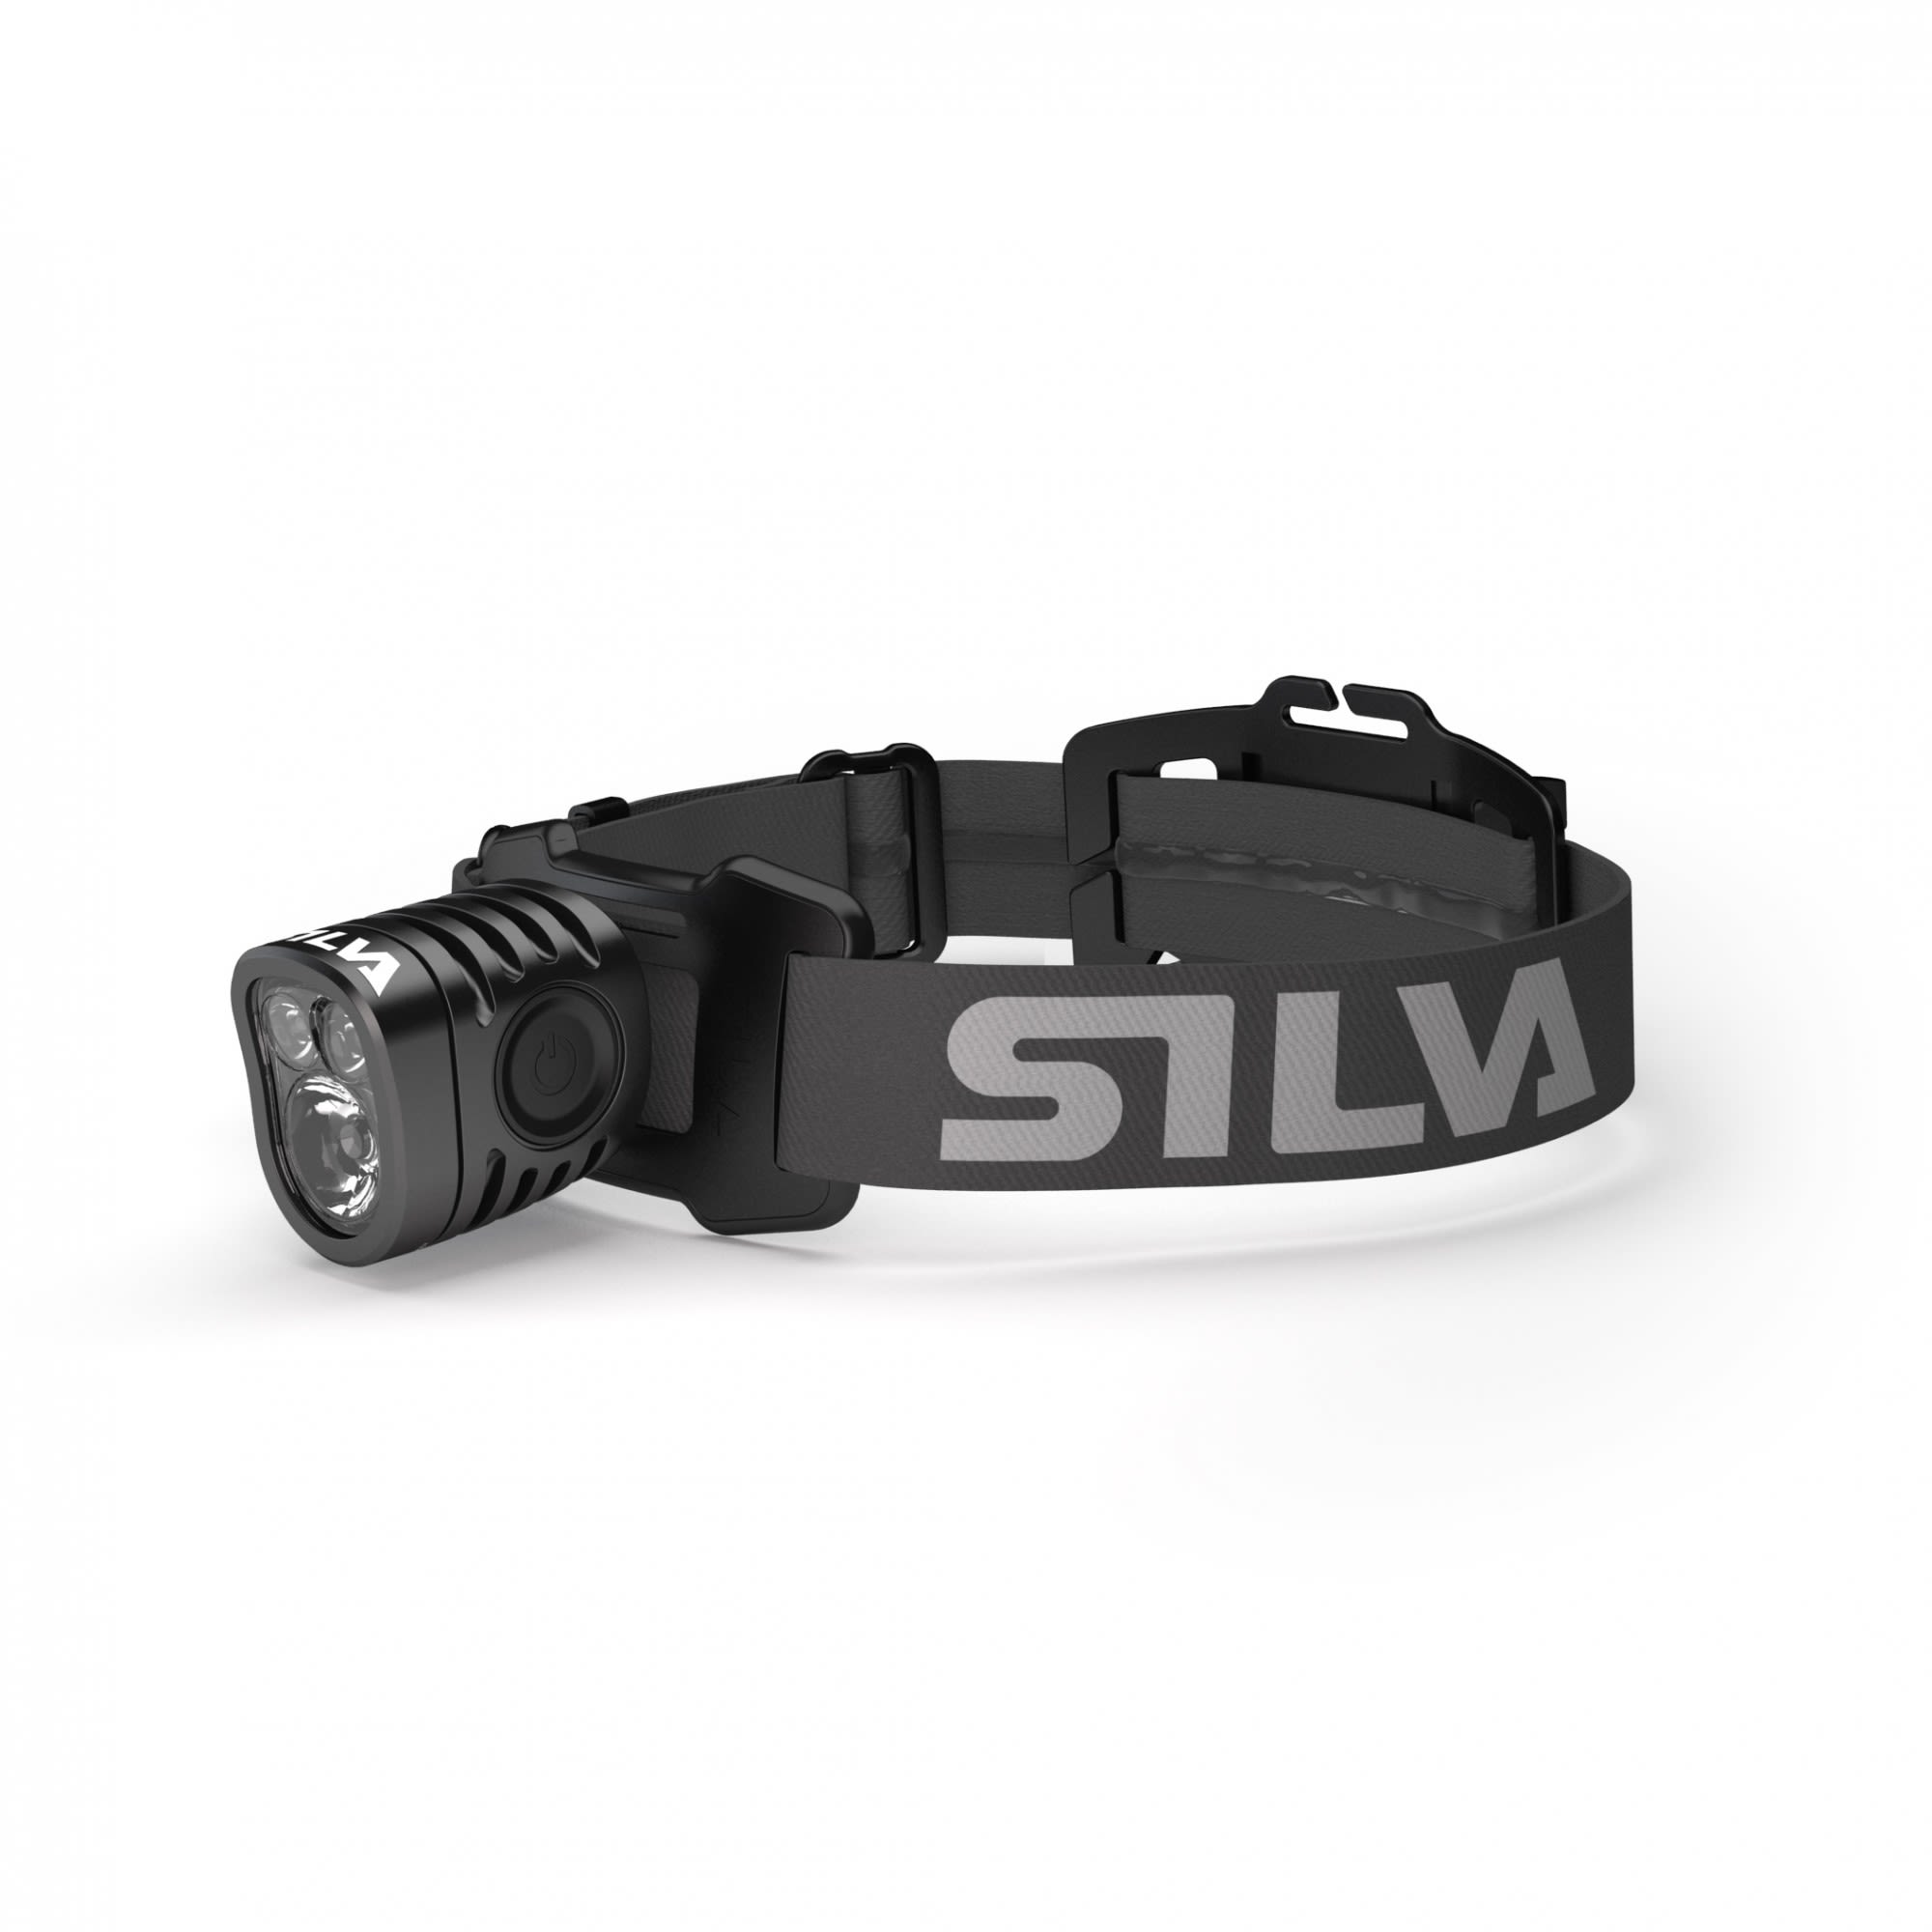 Silva Exceed 4R Schwarz- Stirnlampen- Grsse One Size - Farbe Black unter Silva